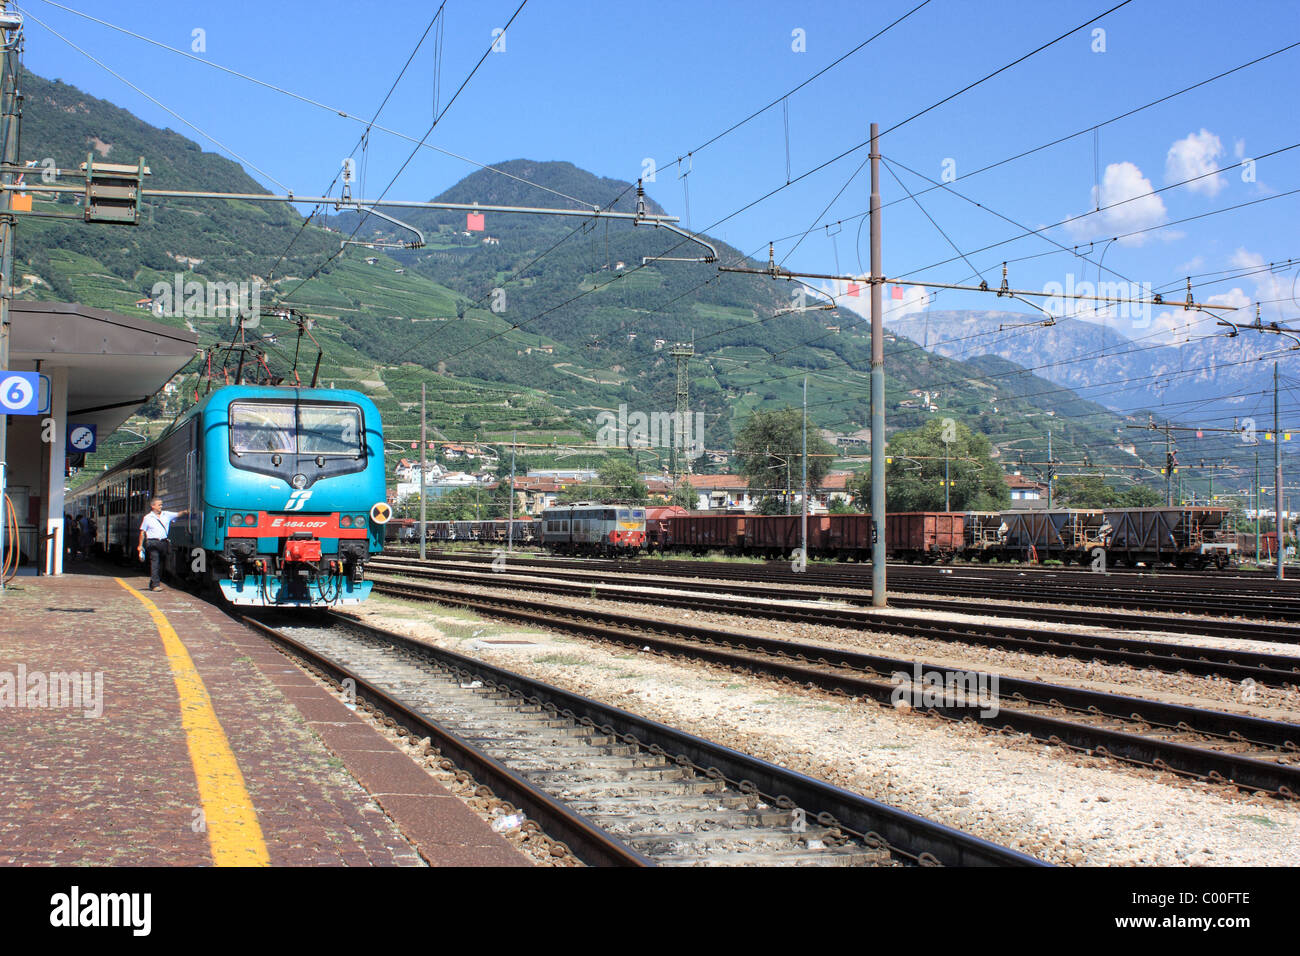 Train station Bozen / Bolzano, Italy Stock Photo